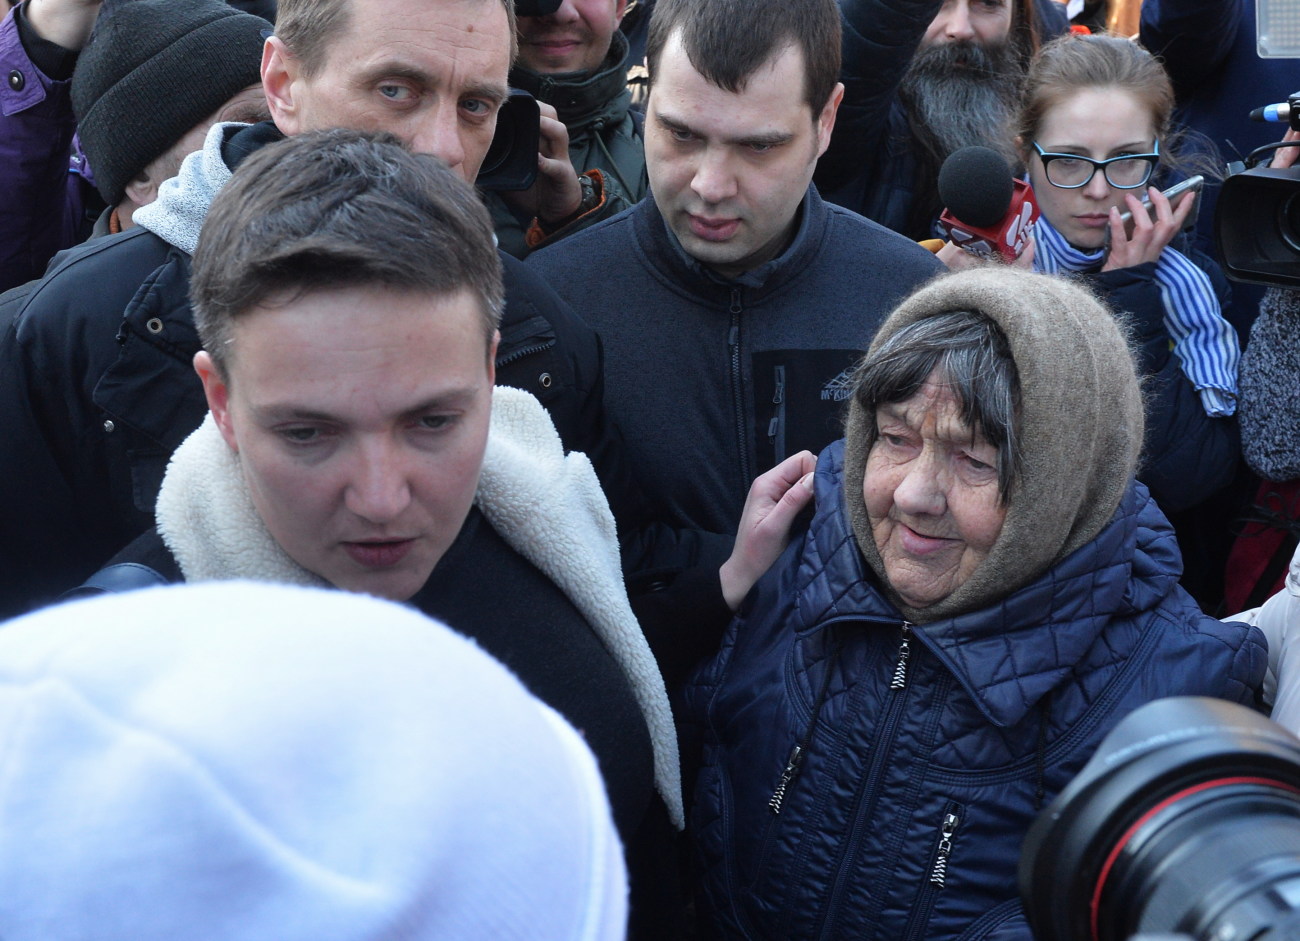 Возле ВР собрались сторонники и противники Савченко